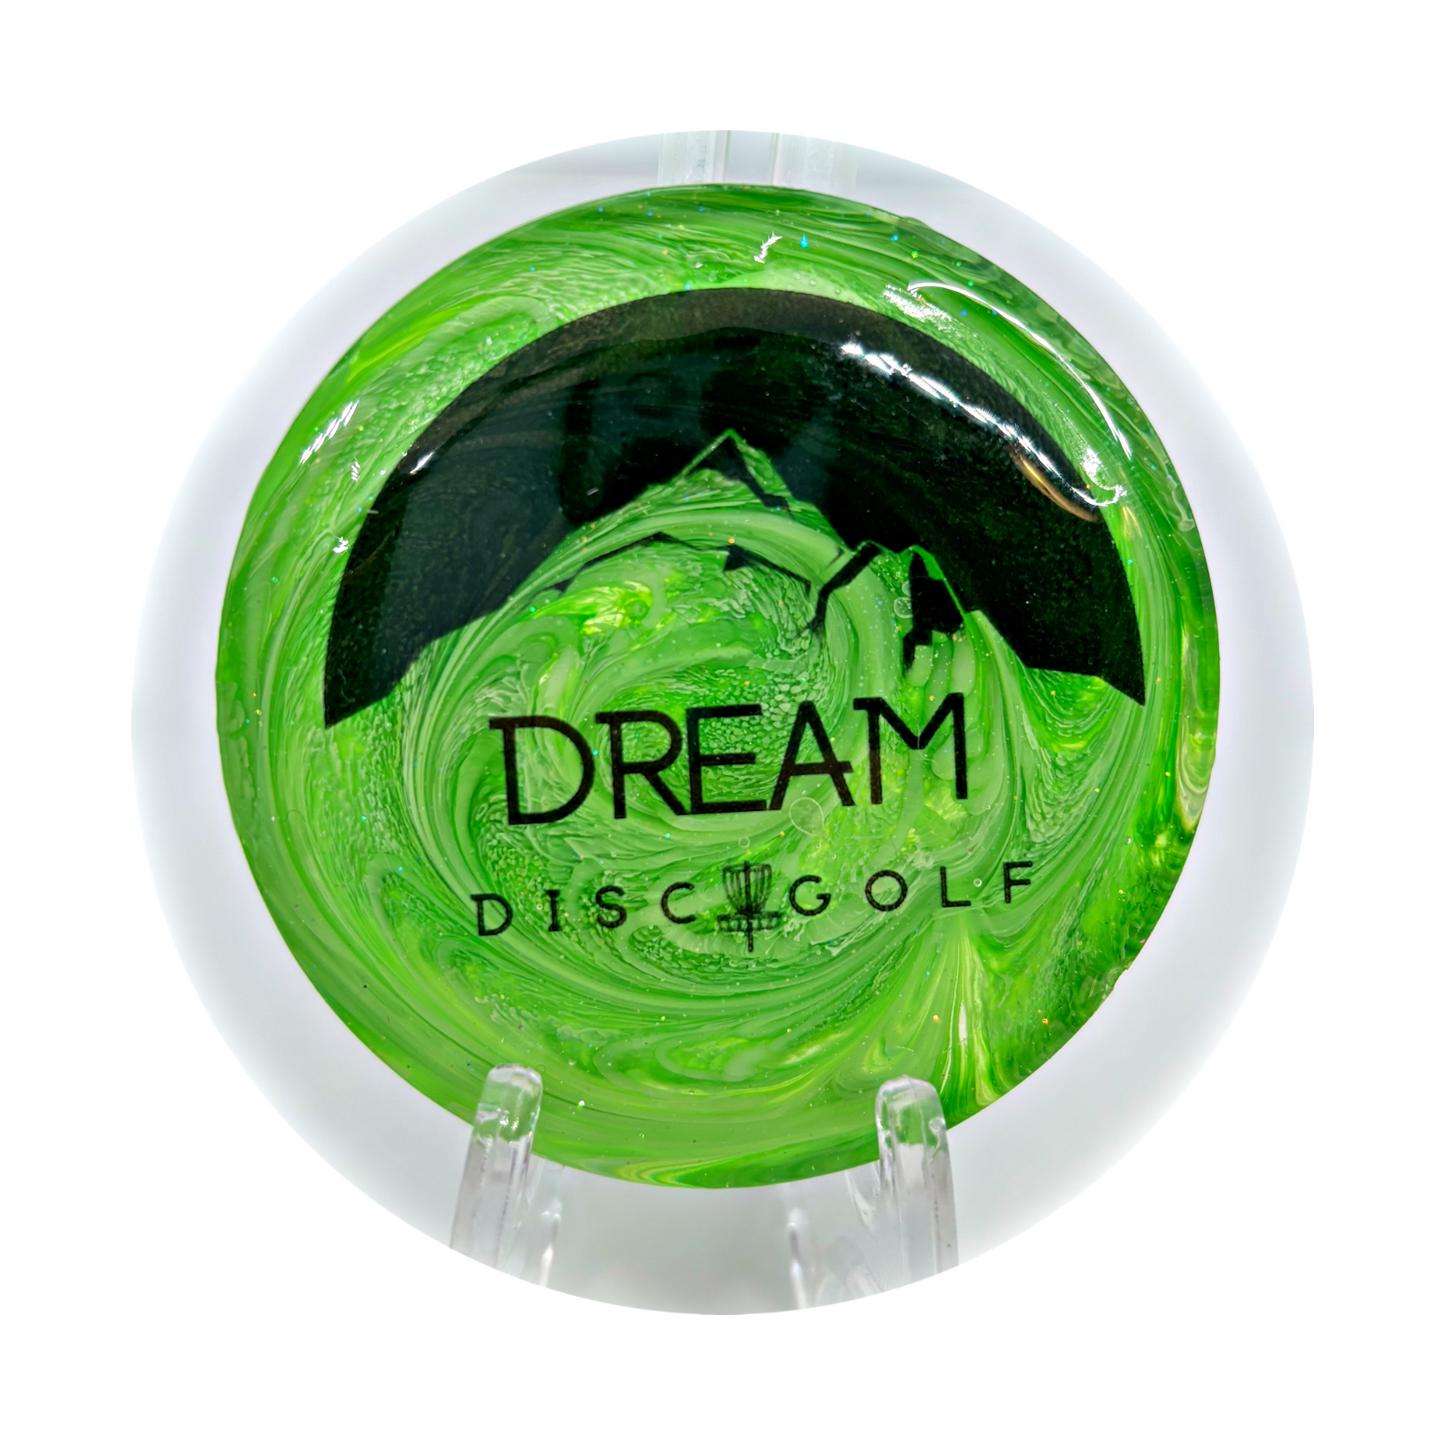 Dream Disc Golf Mini